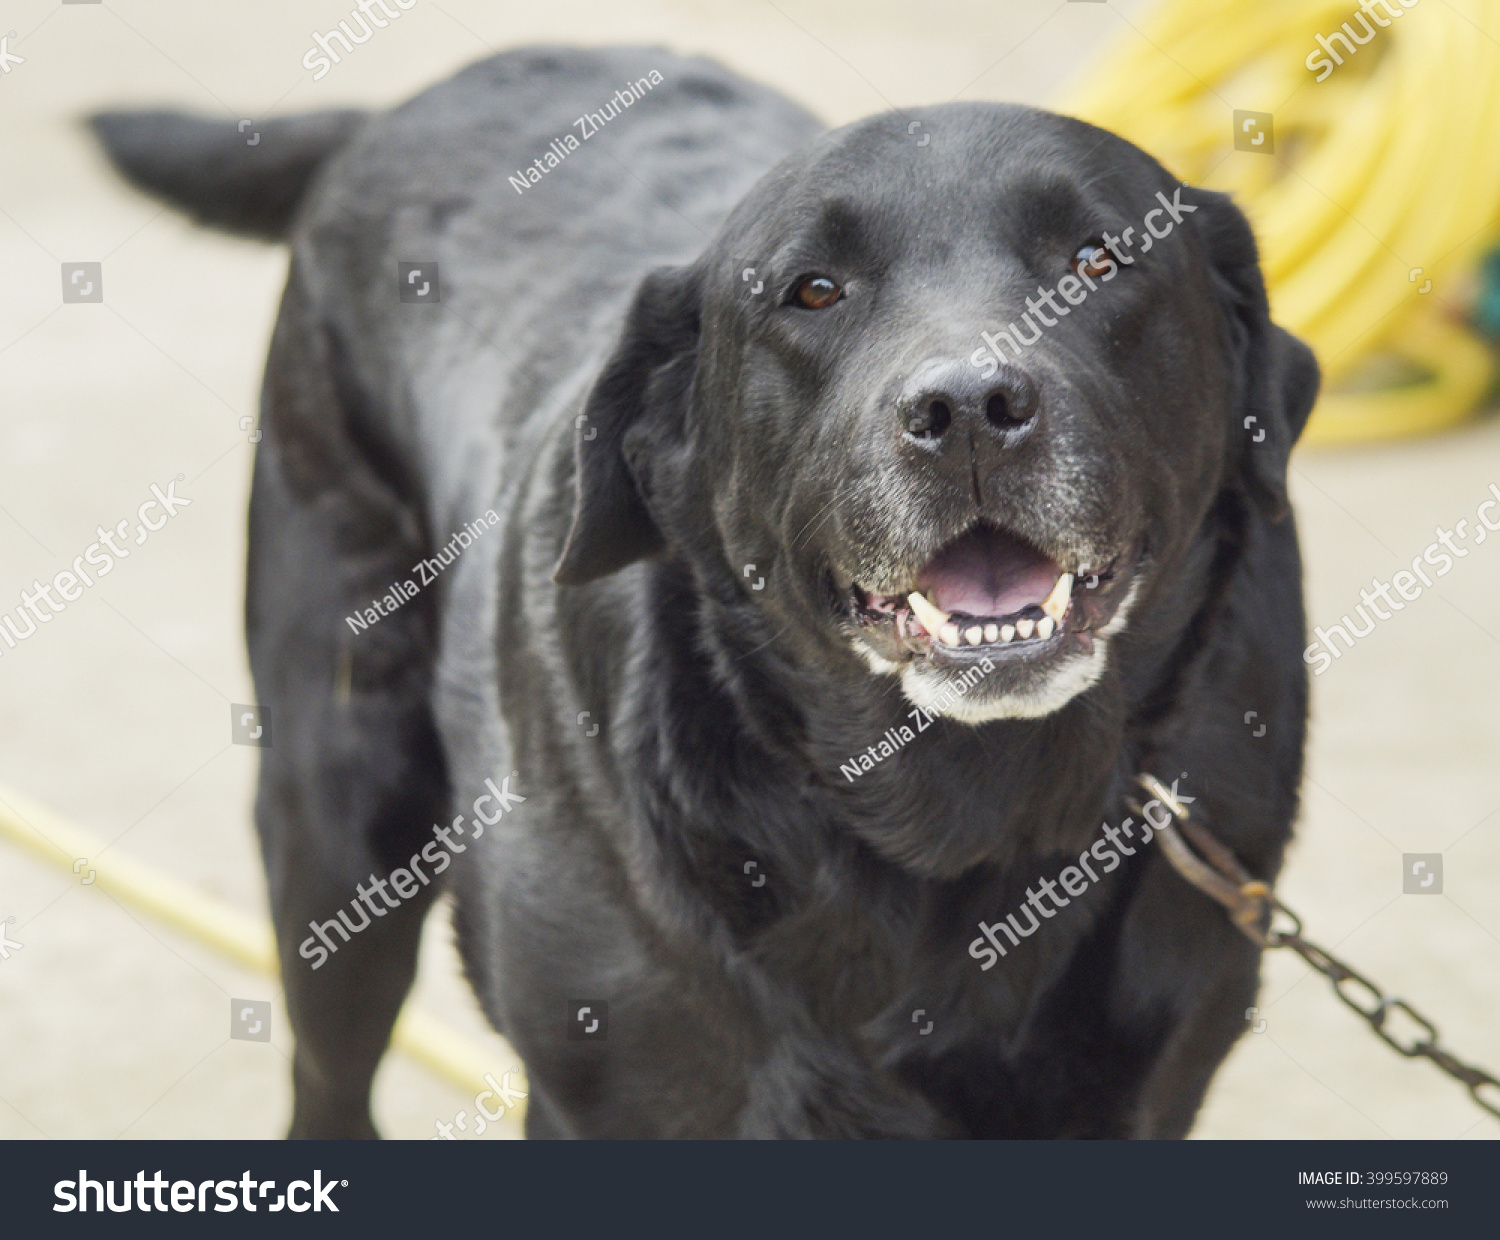 Shorthair Large Longeared Black Dog On Royalty Free Stock Image